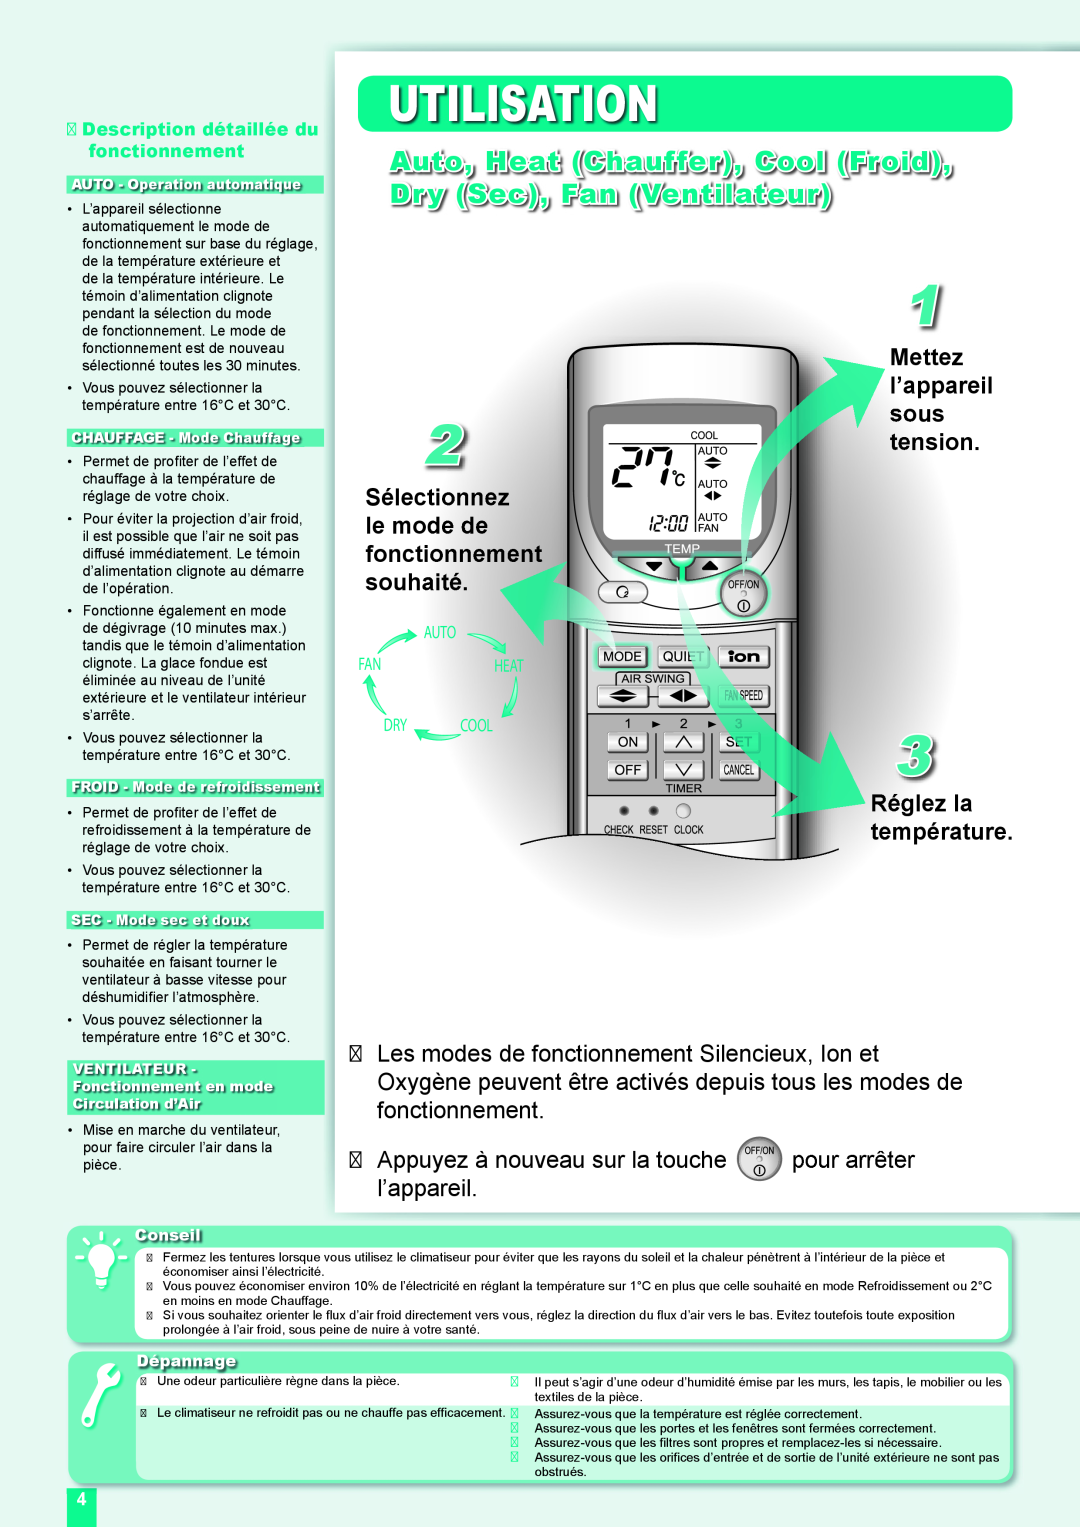 Panasonic CU-XE9DKE Utilisation, Appuyez à nouveau sur la touche l’appareil, Description détaillée du fonctionnement 